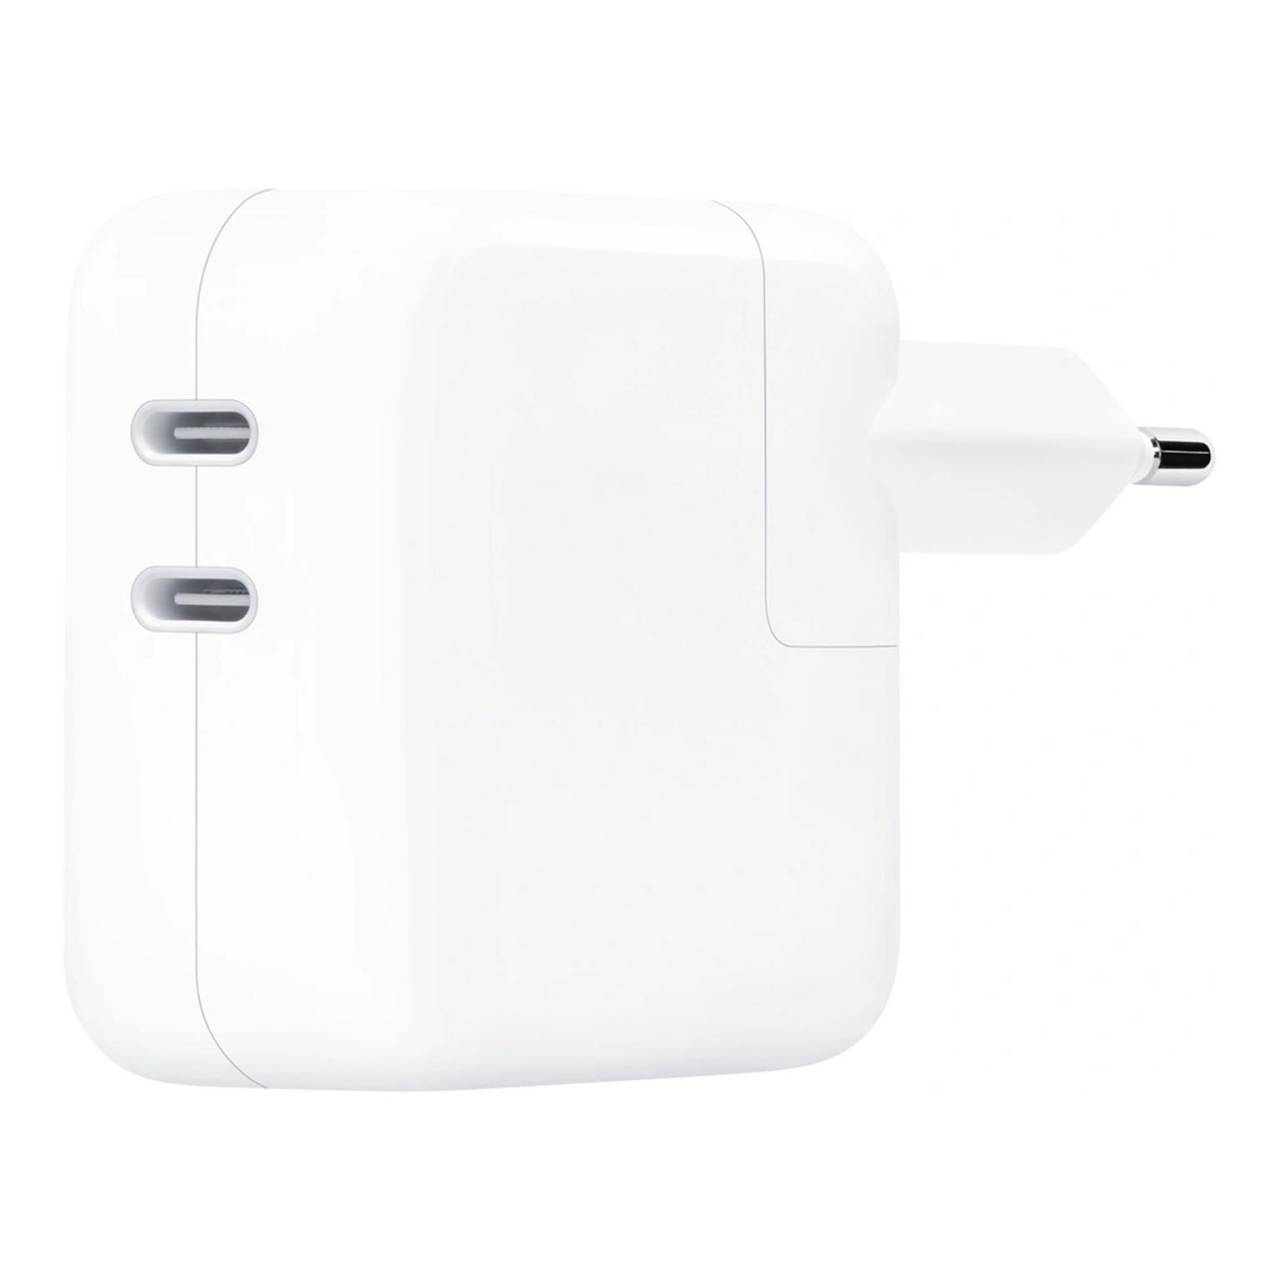 Apple Netzteil – 2x USB-C Ladegerät für Smartphones und andere Geräte, kompatibel mit dem Reise-Adapter-Kit, 35W